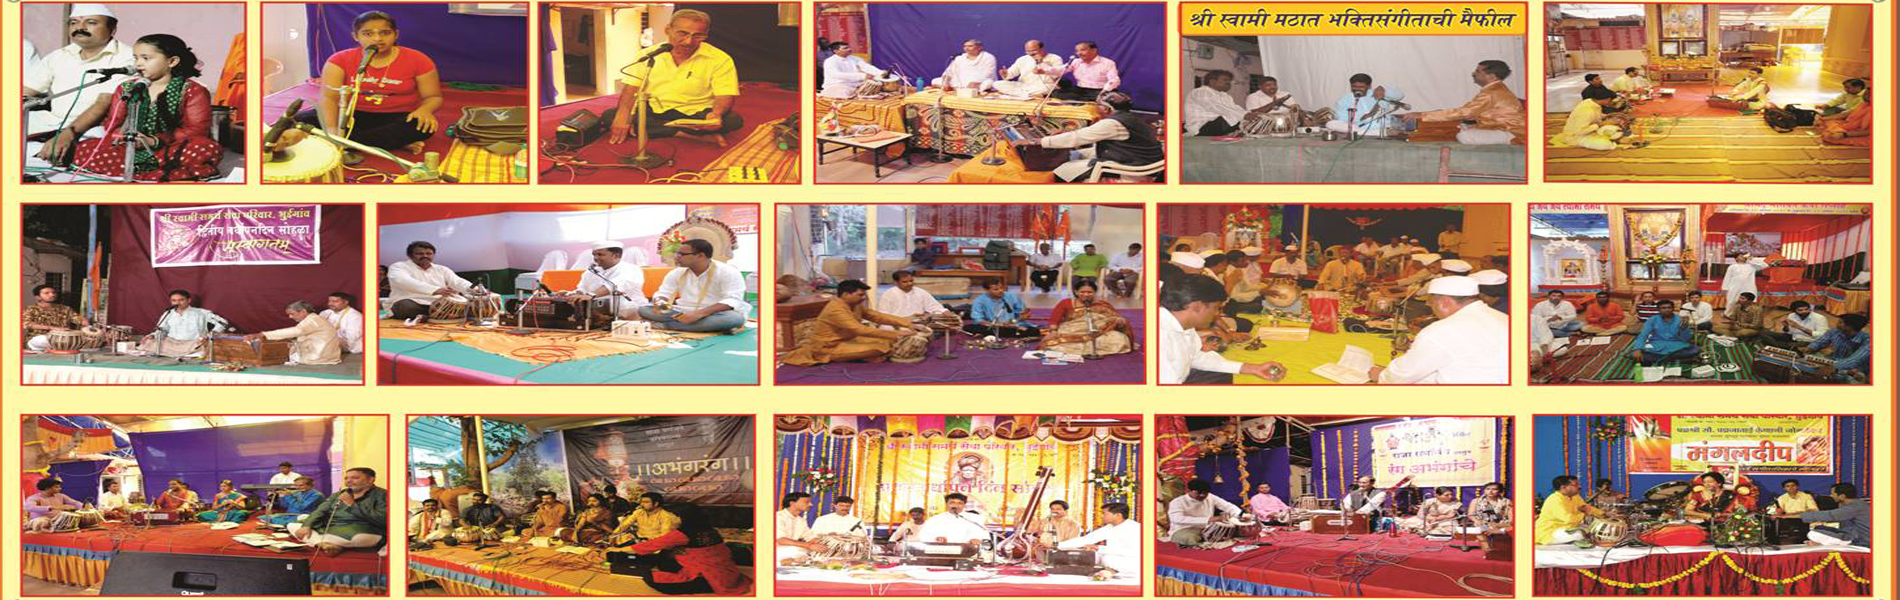 Swami Samarth Banner 7